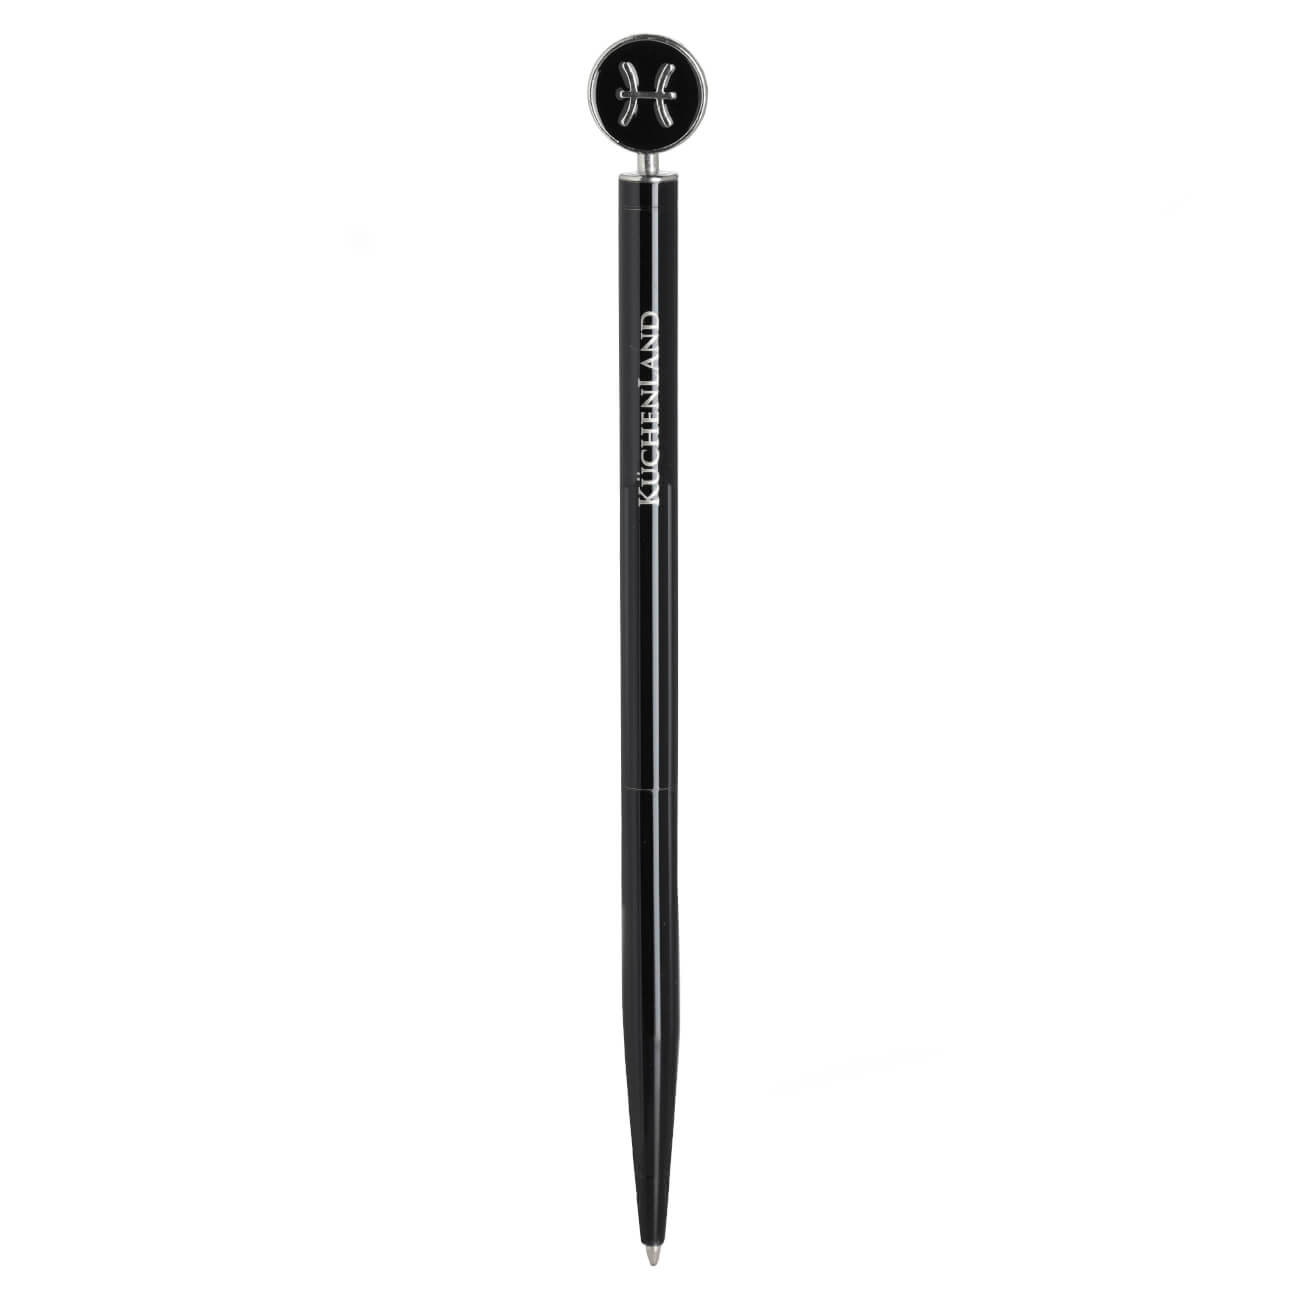 Ручка шариковая, 15 см, с фигуркой, сталь, черно-серебристая, Рыбы, Zodiac ручка закладка